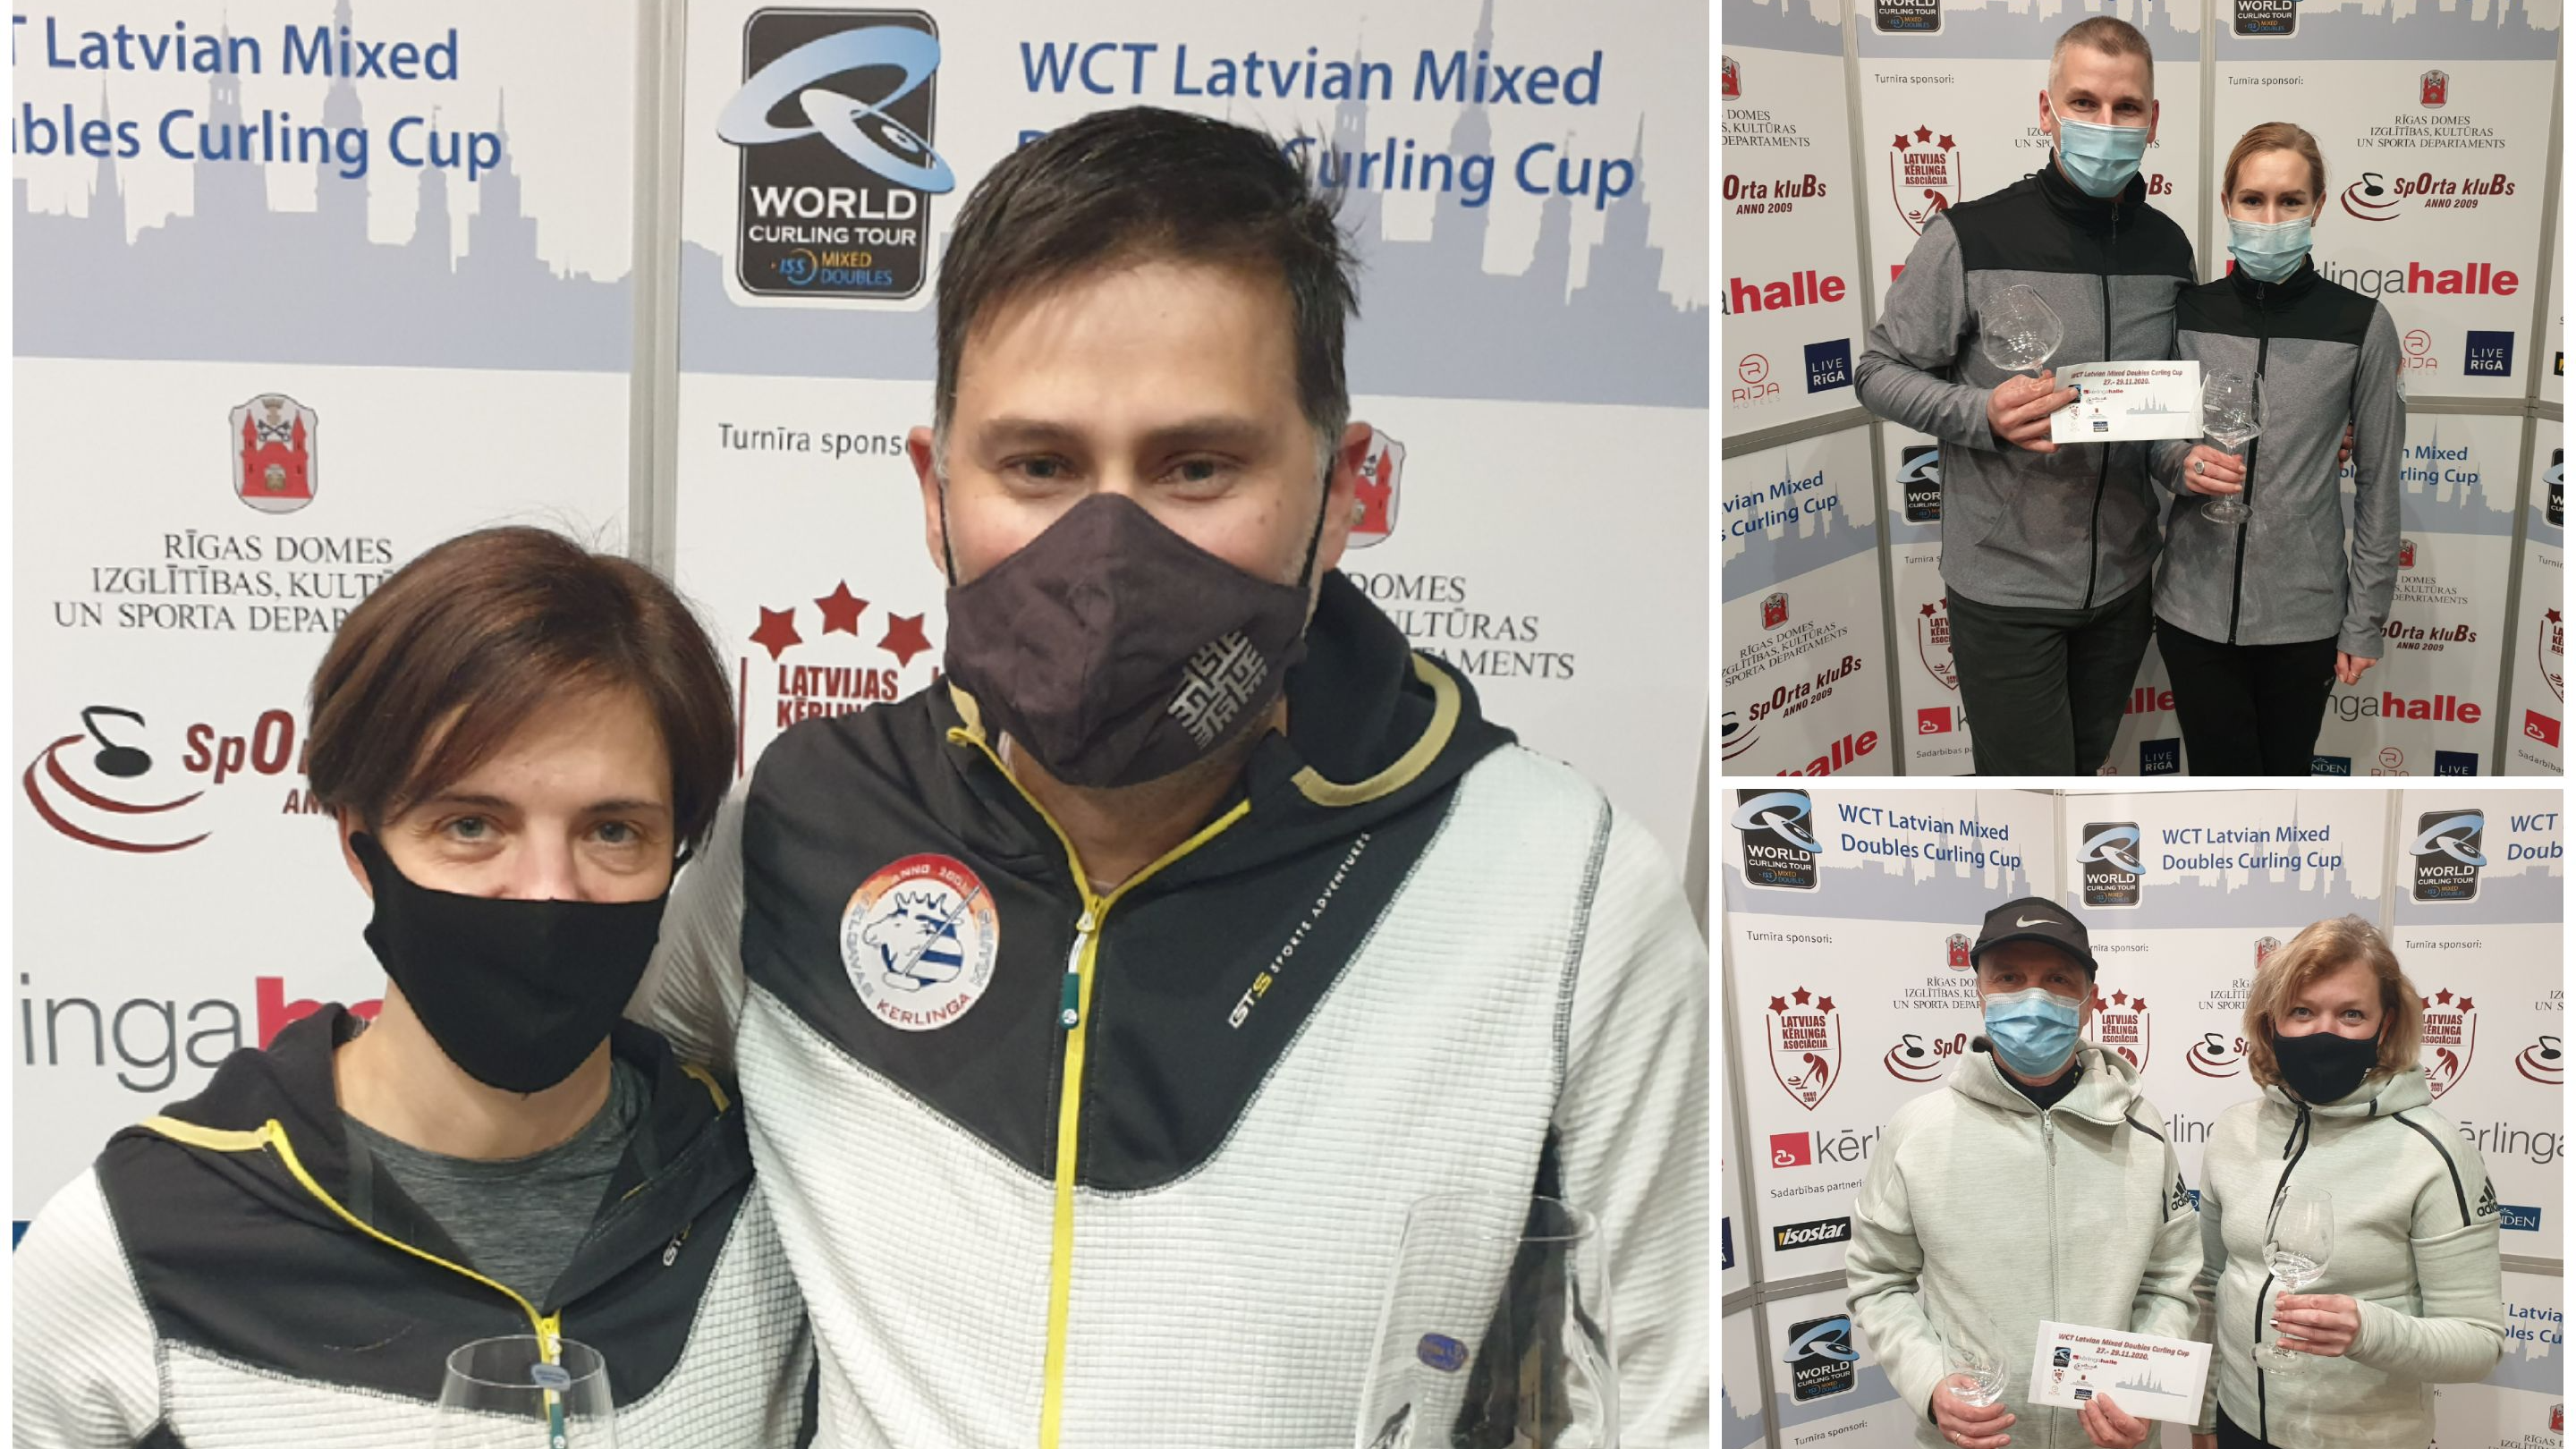 Norisinājies starptautisks turnīrs "WCT Latvian Mixed Doubles Curling Cup"